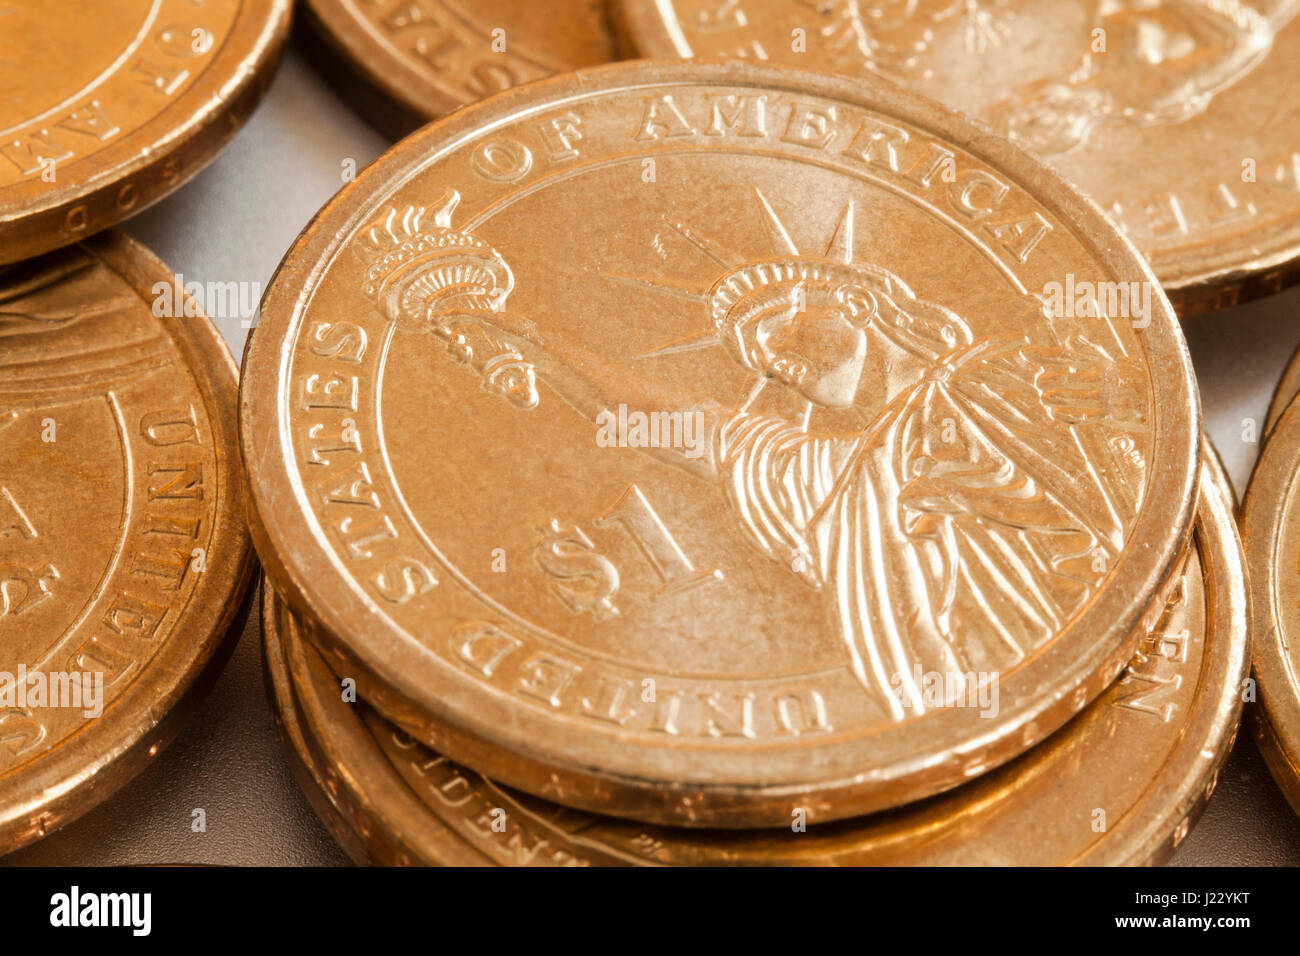 1 présidentielle pièce d'un dollar (US $1 pièces vue arrière) - USA Banque D'Images